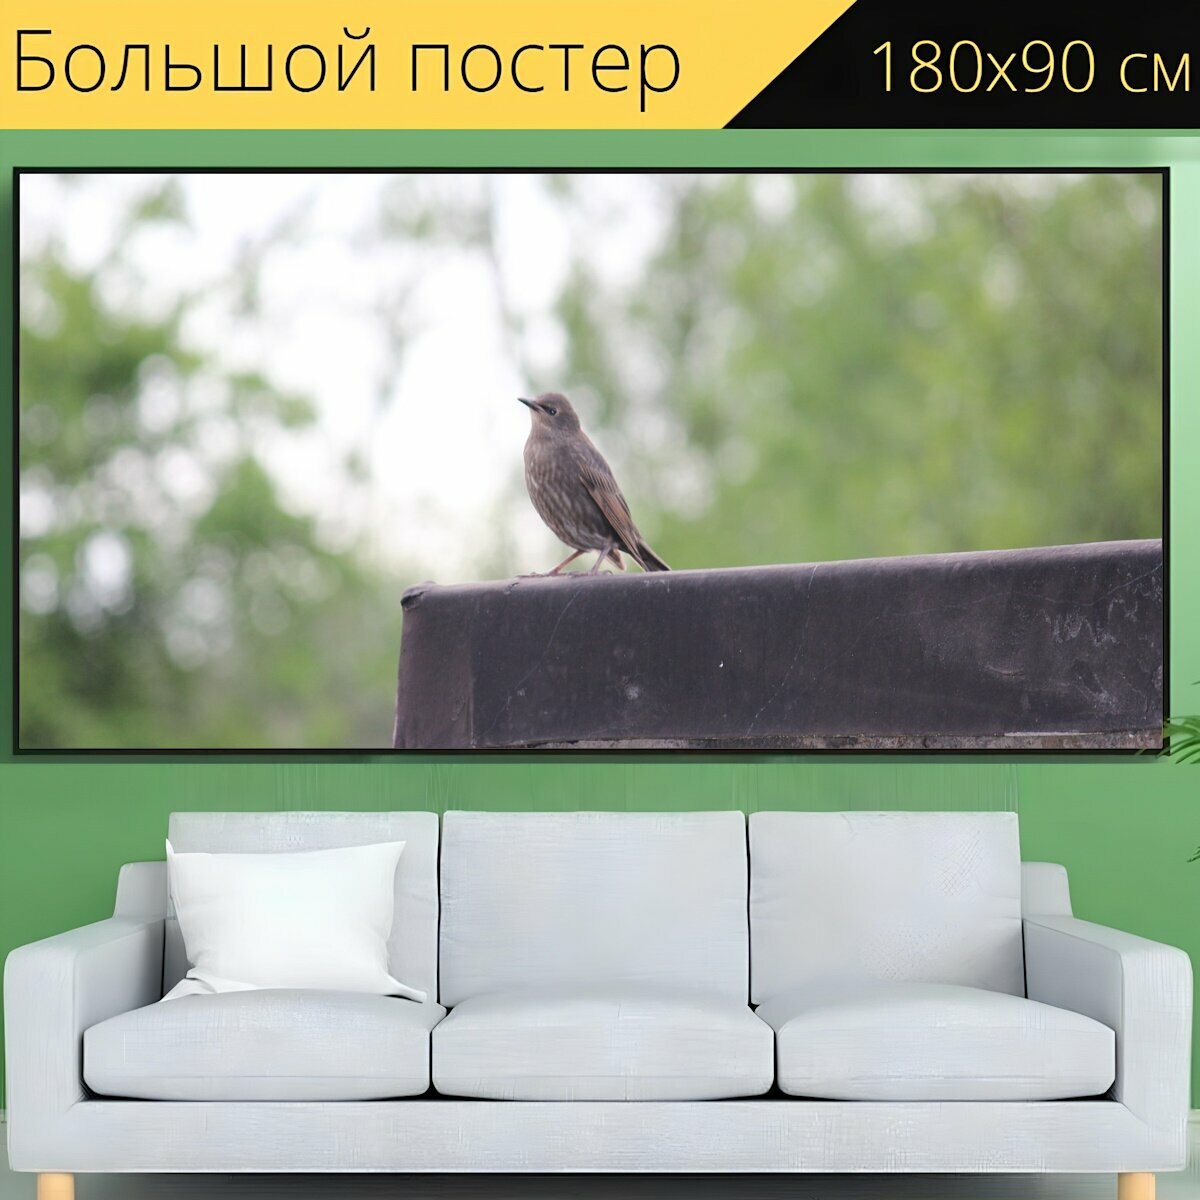 Большой постер "Птица, маленькая птица, дикая природа" 180 x 90 см. для интерьера